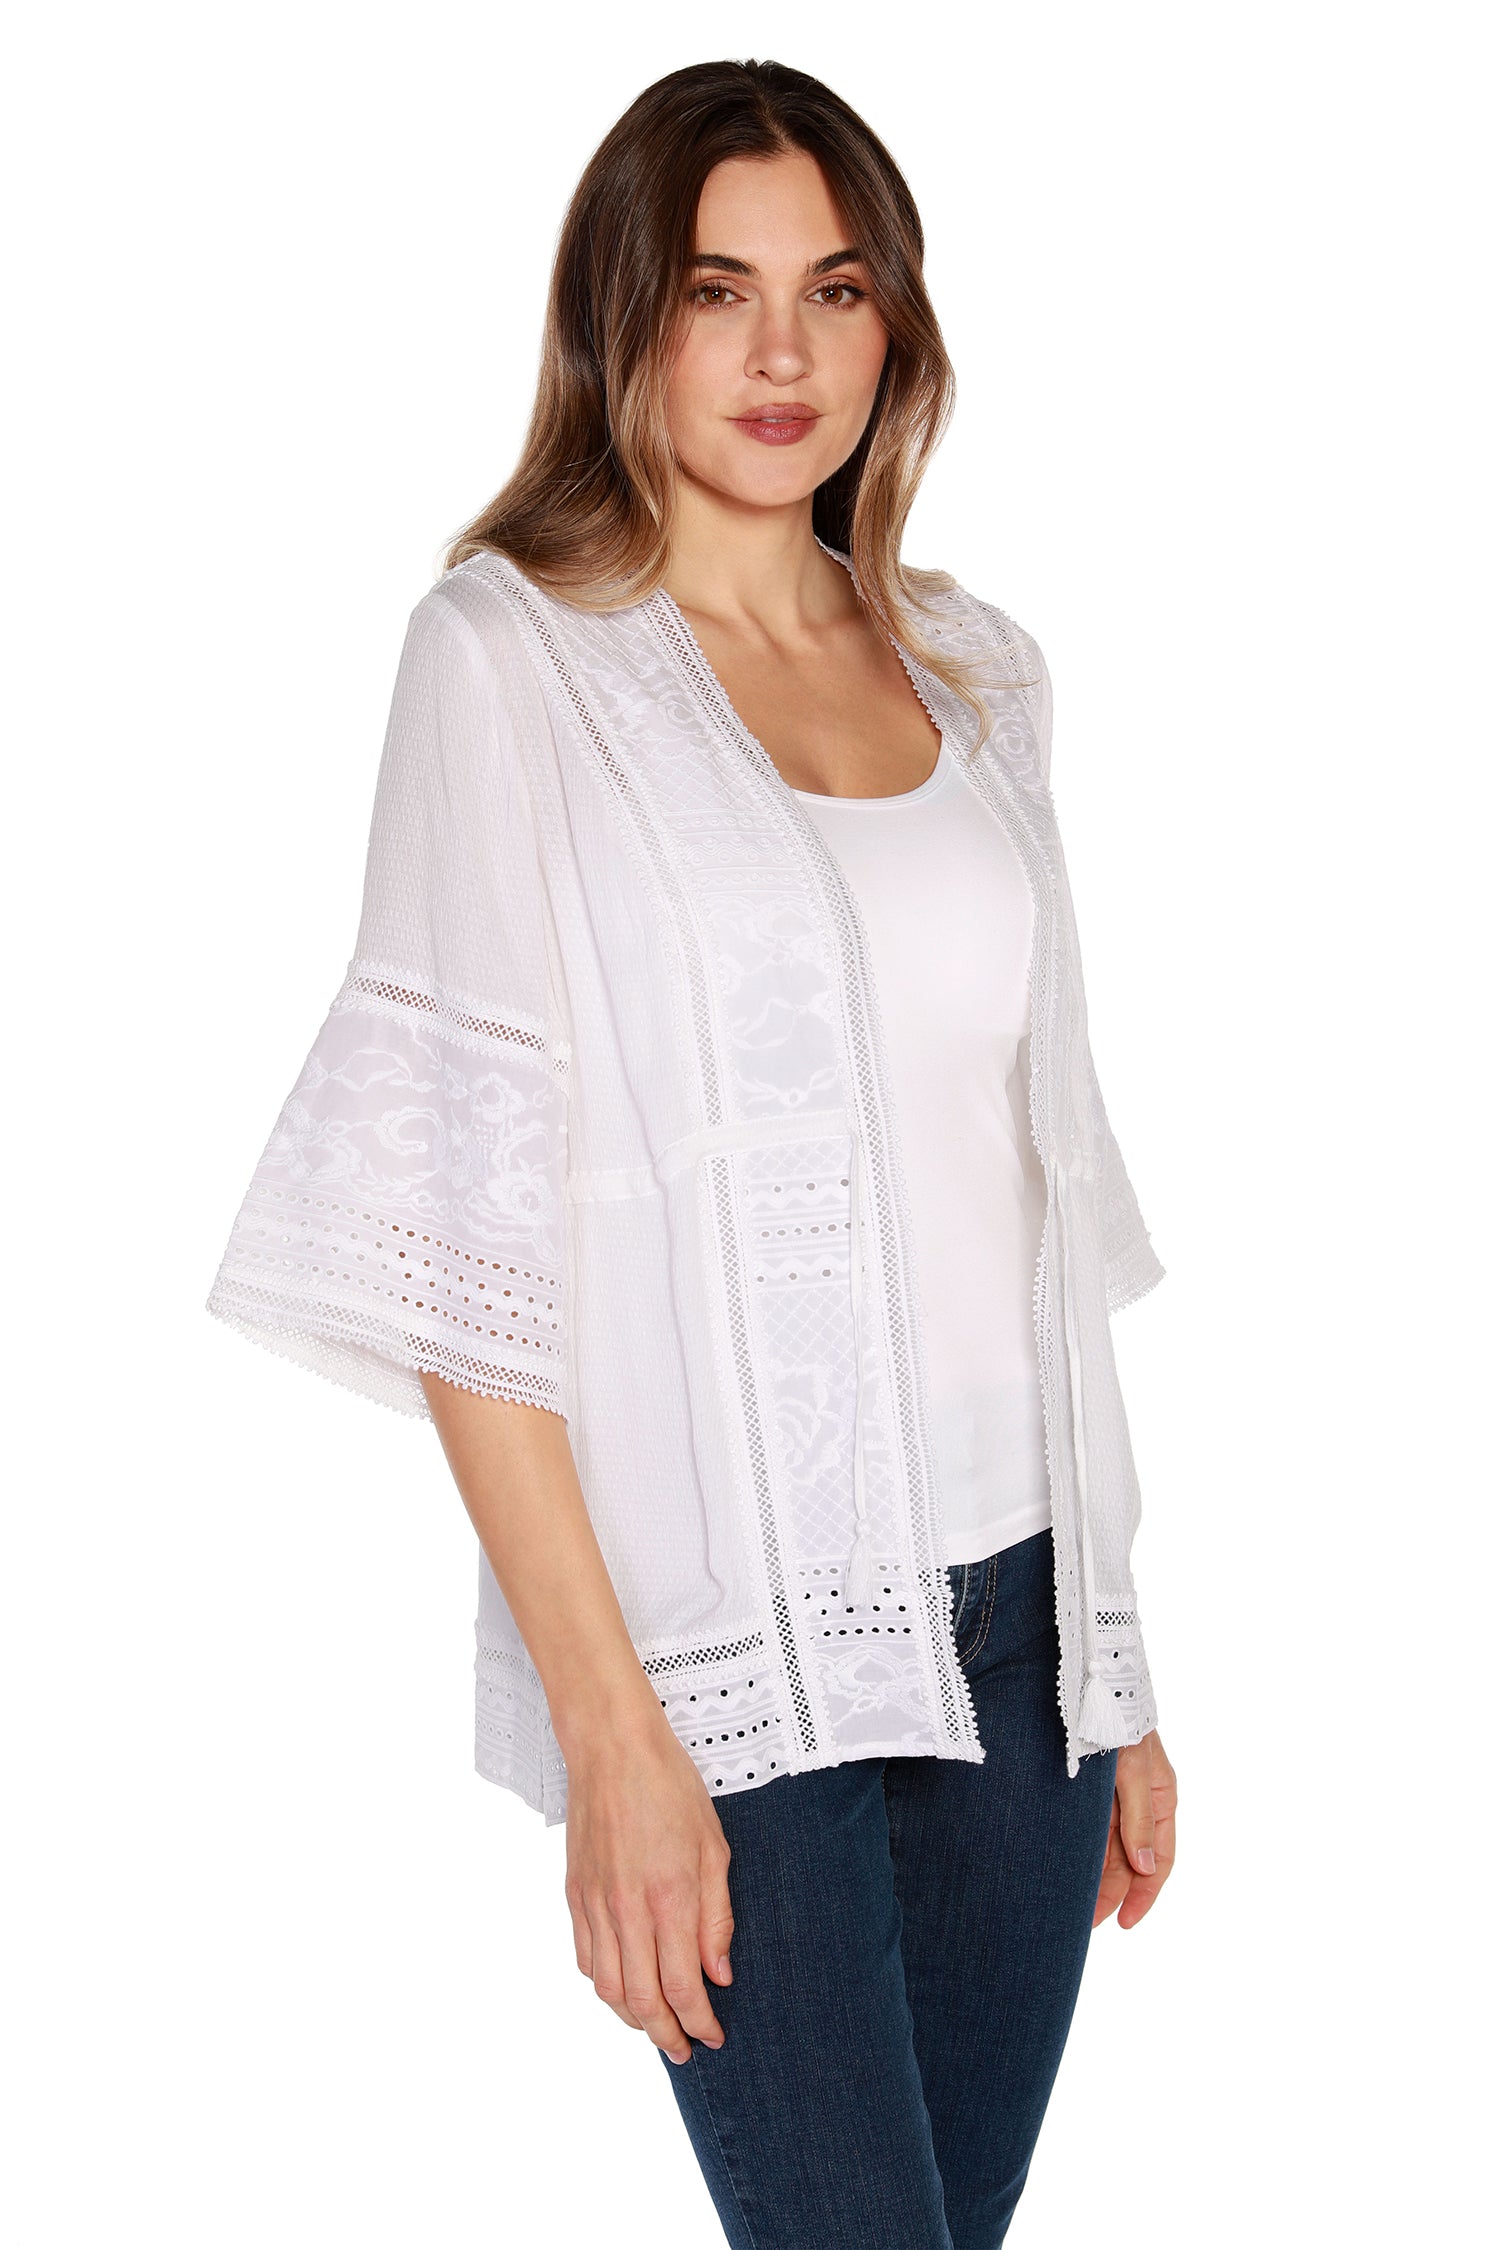 Kimono de algodón para mujer con encaje y bordado con ojales